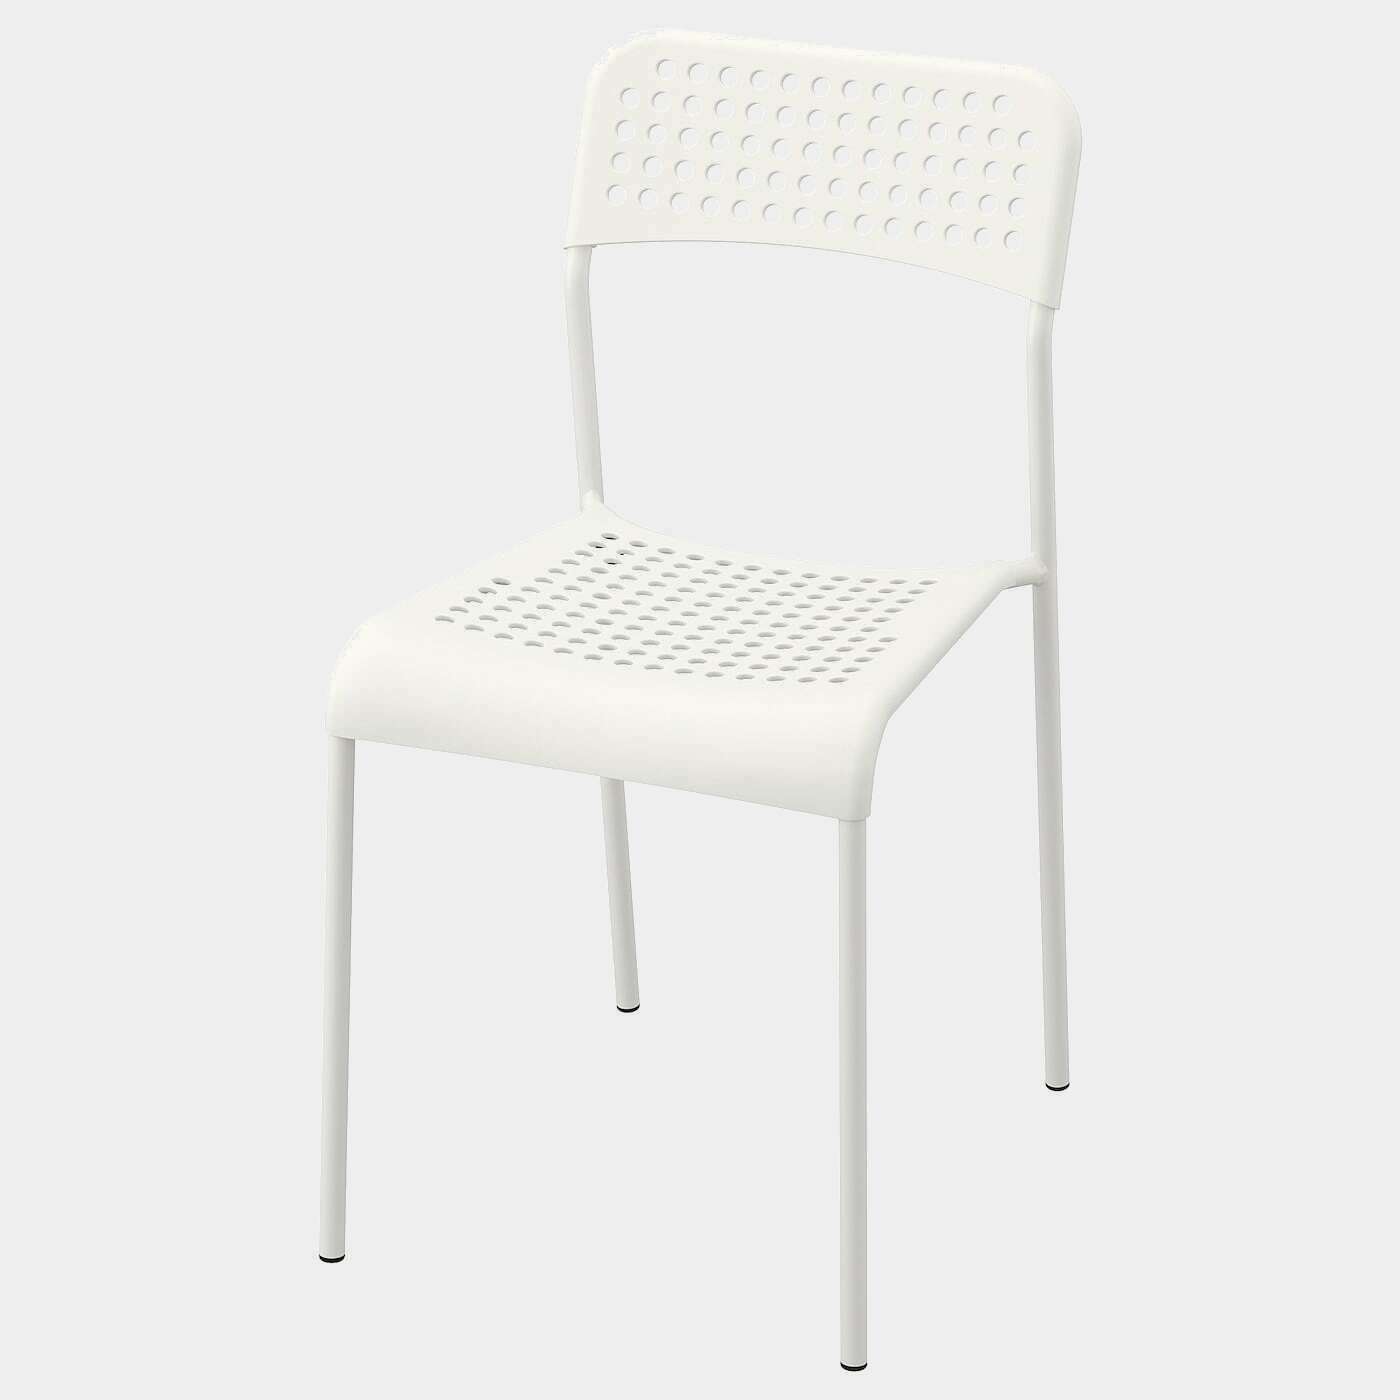 ADDE Stuhl  - Esszimmerstühle - Möbel Ideen für dein Zuhause von Home Trends. Möbel Trends von Social Media Influencer für dein Skandi Zuhause.